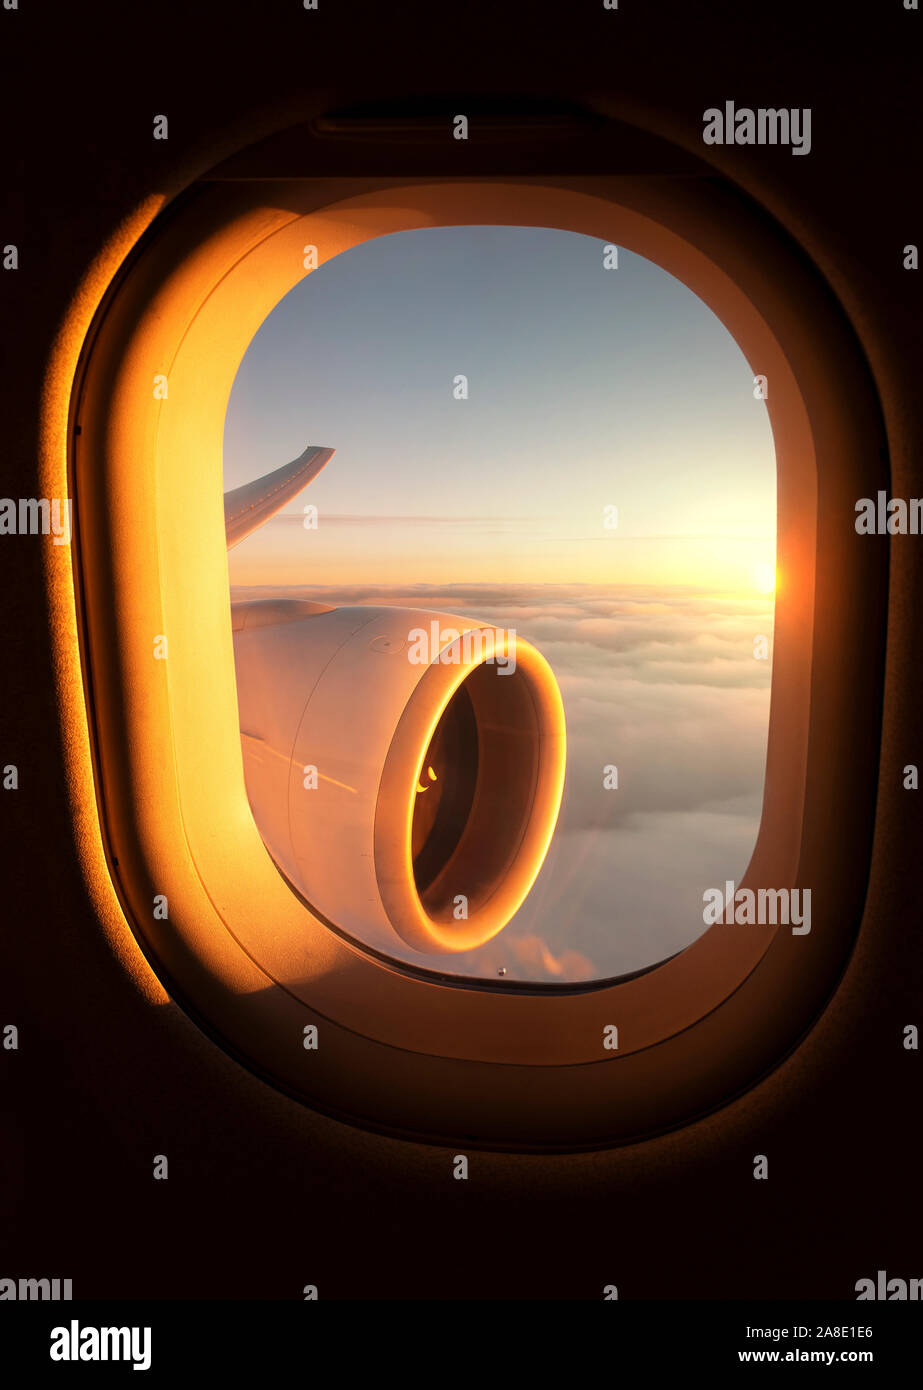 Impresionante puesta de sol vistos a través de la ventana de un avión con el jet del ala y el motor visible. Foto de stock